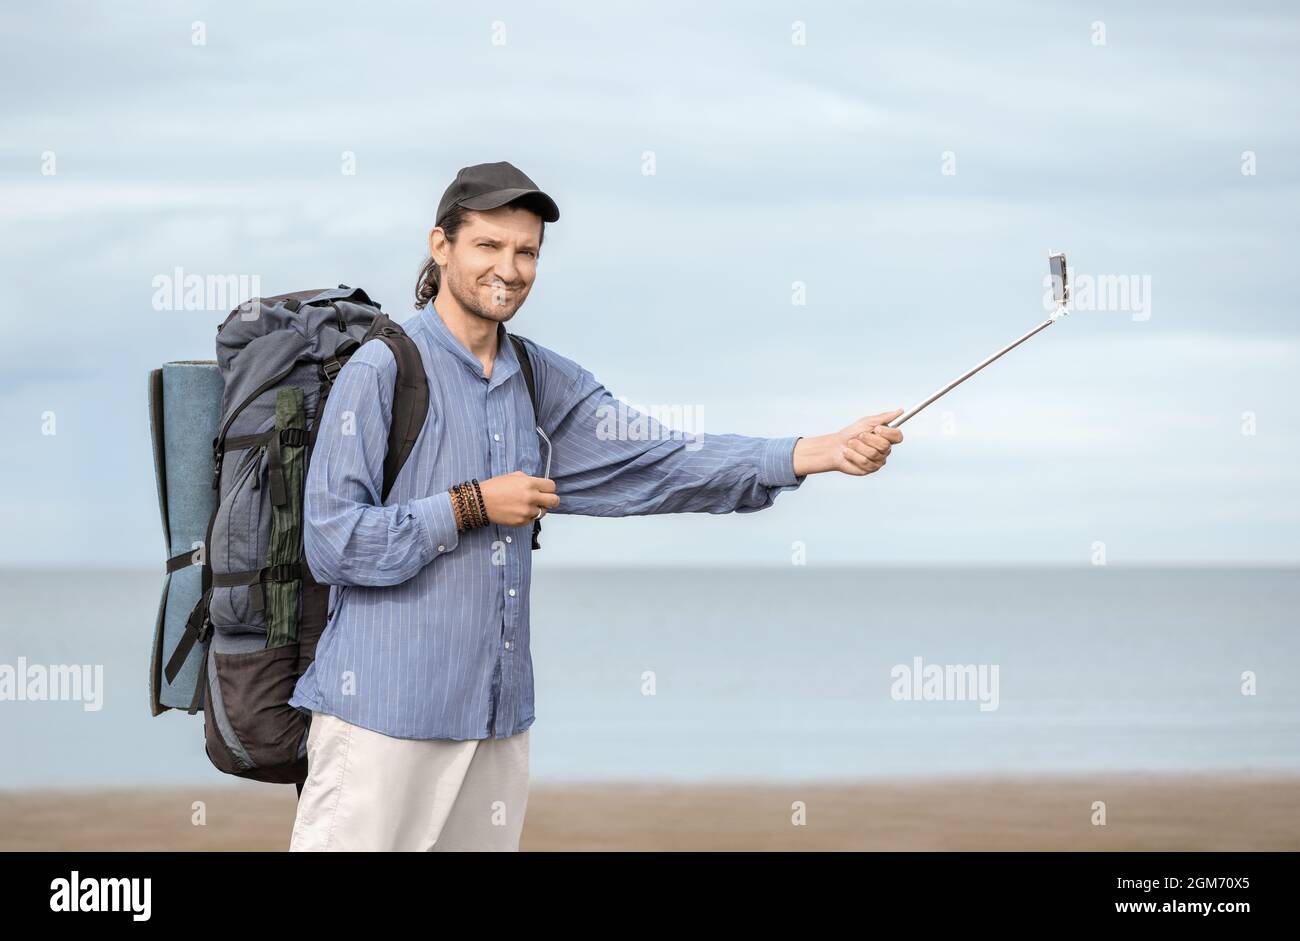 Un hombre de 40 años de edad, con su mochila y estera turística sostiene un palo de selfie blanco en su mano contra el fondo de un mar en un día nublado. Foto de stock